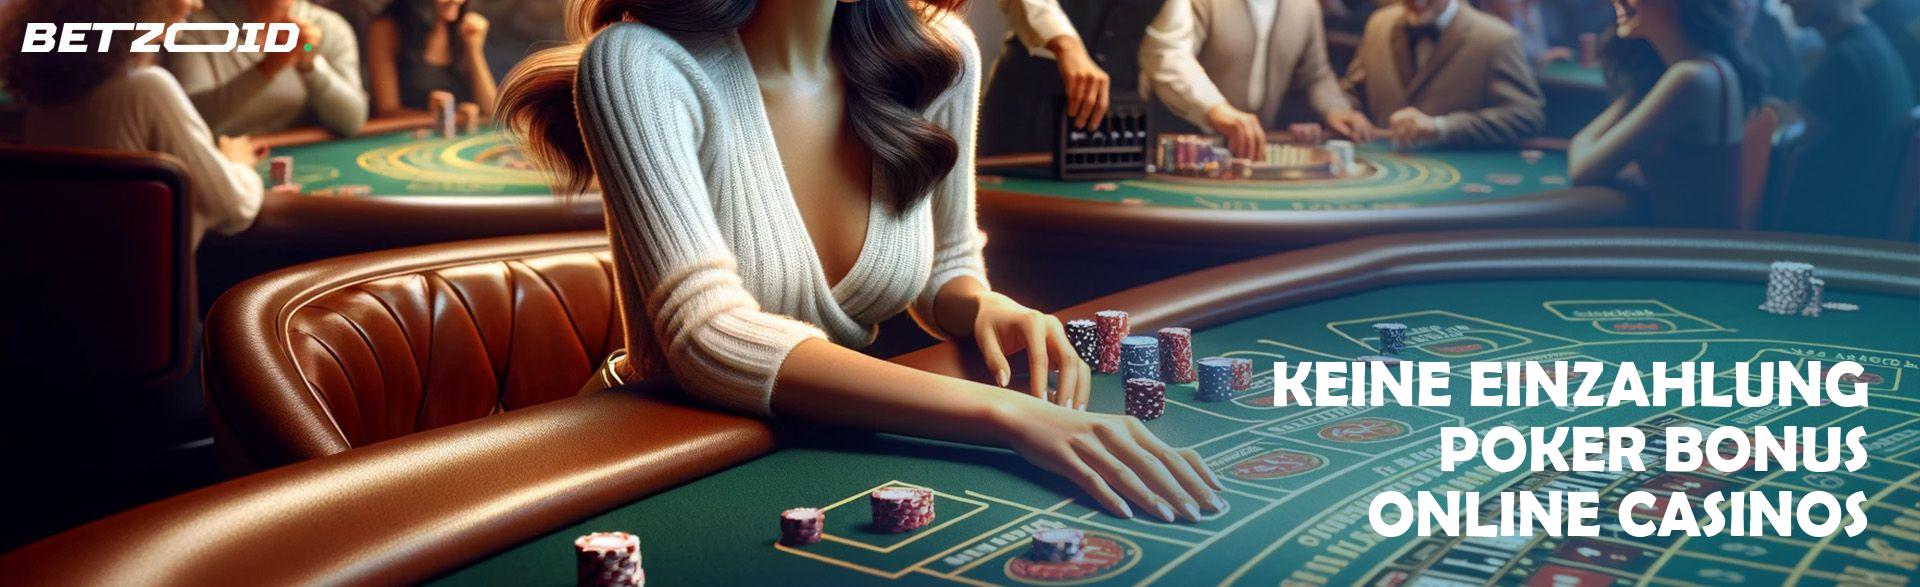 Keine Einzahlung Poker Bonus Online Casinos.